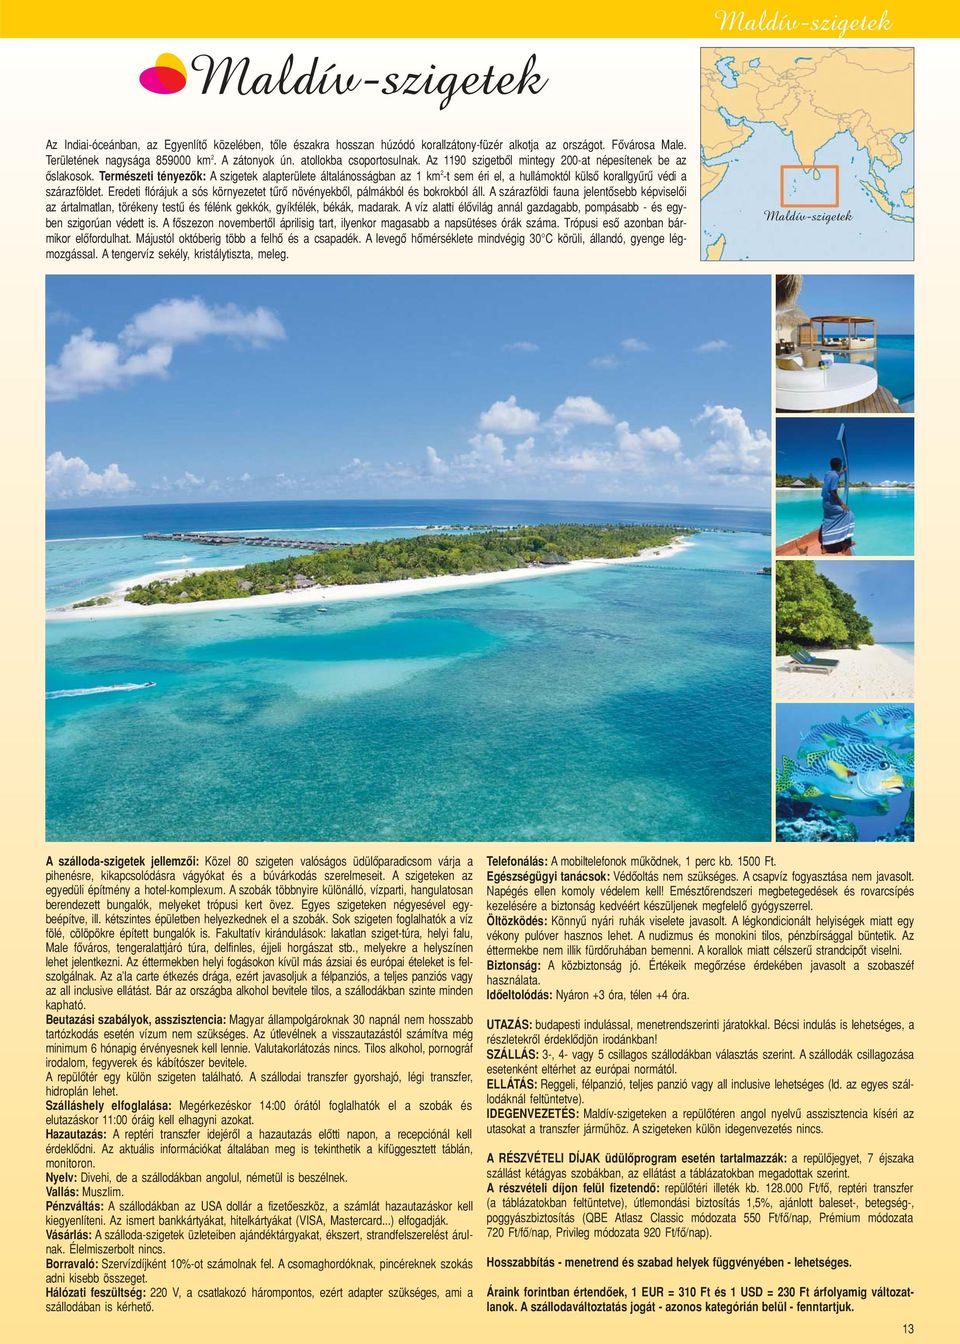 Természeti tényezôk: A szigetek alapterülete általánosságban az 1 km 2 -t sem éri el, a hullámoktól külsô korallgyûrû védi a szárazföldet.